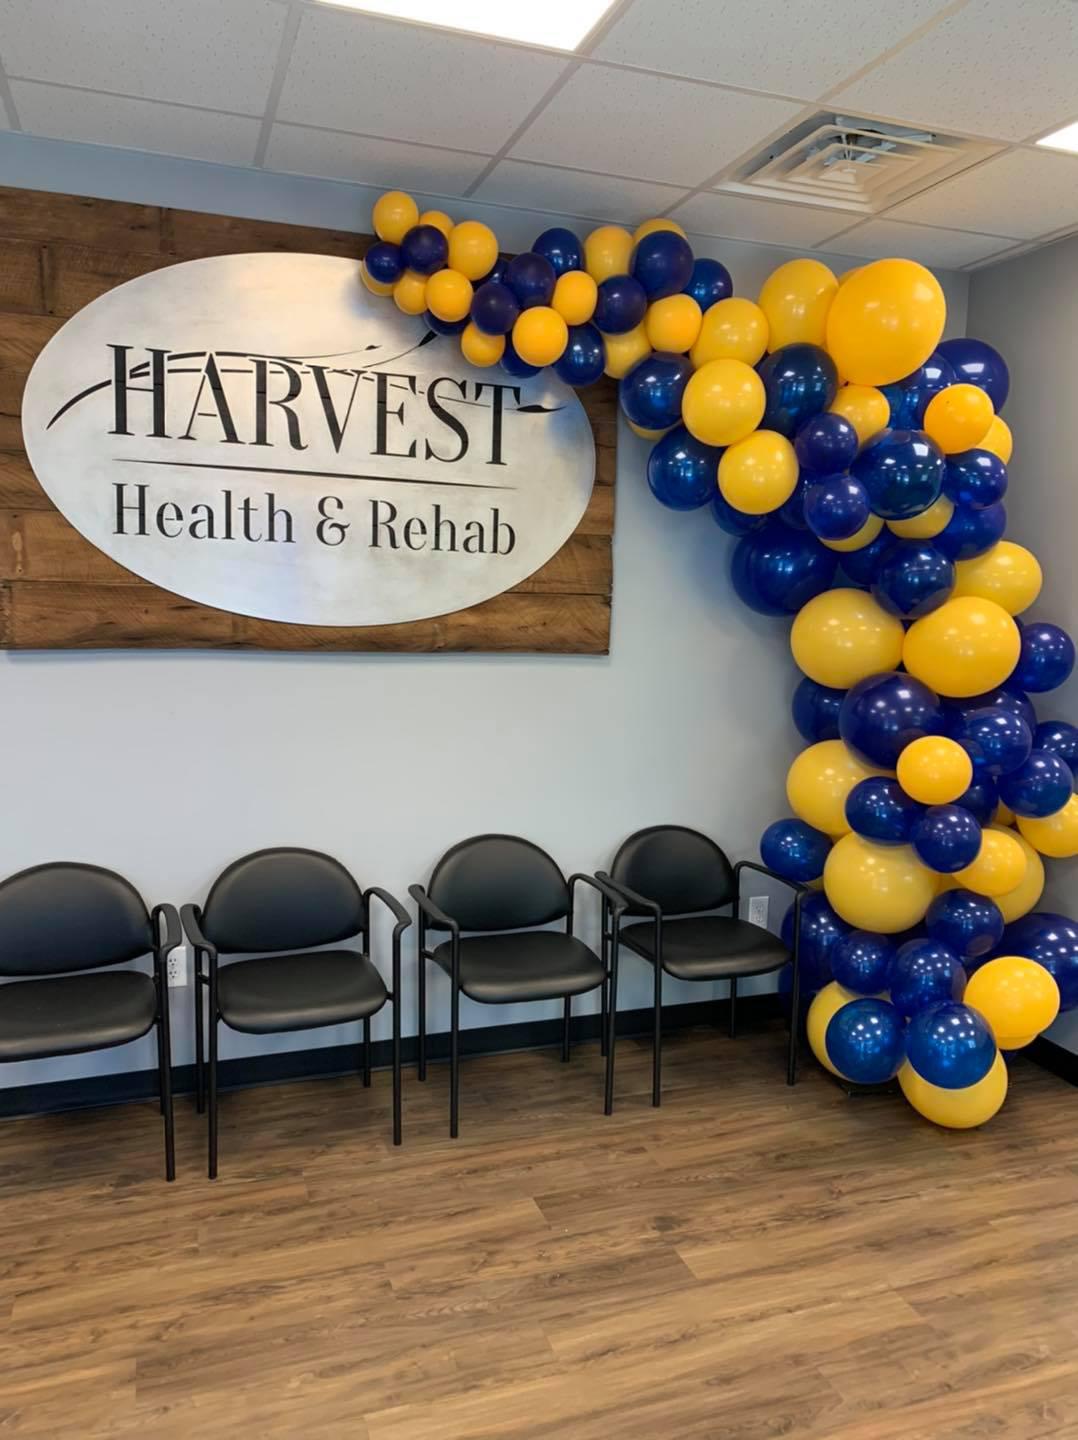 Harvest Health & Rehab